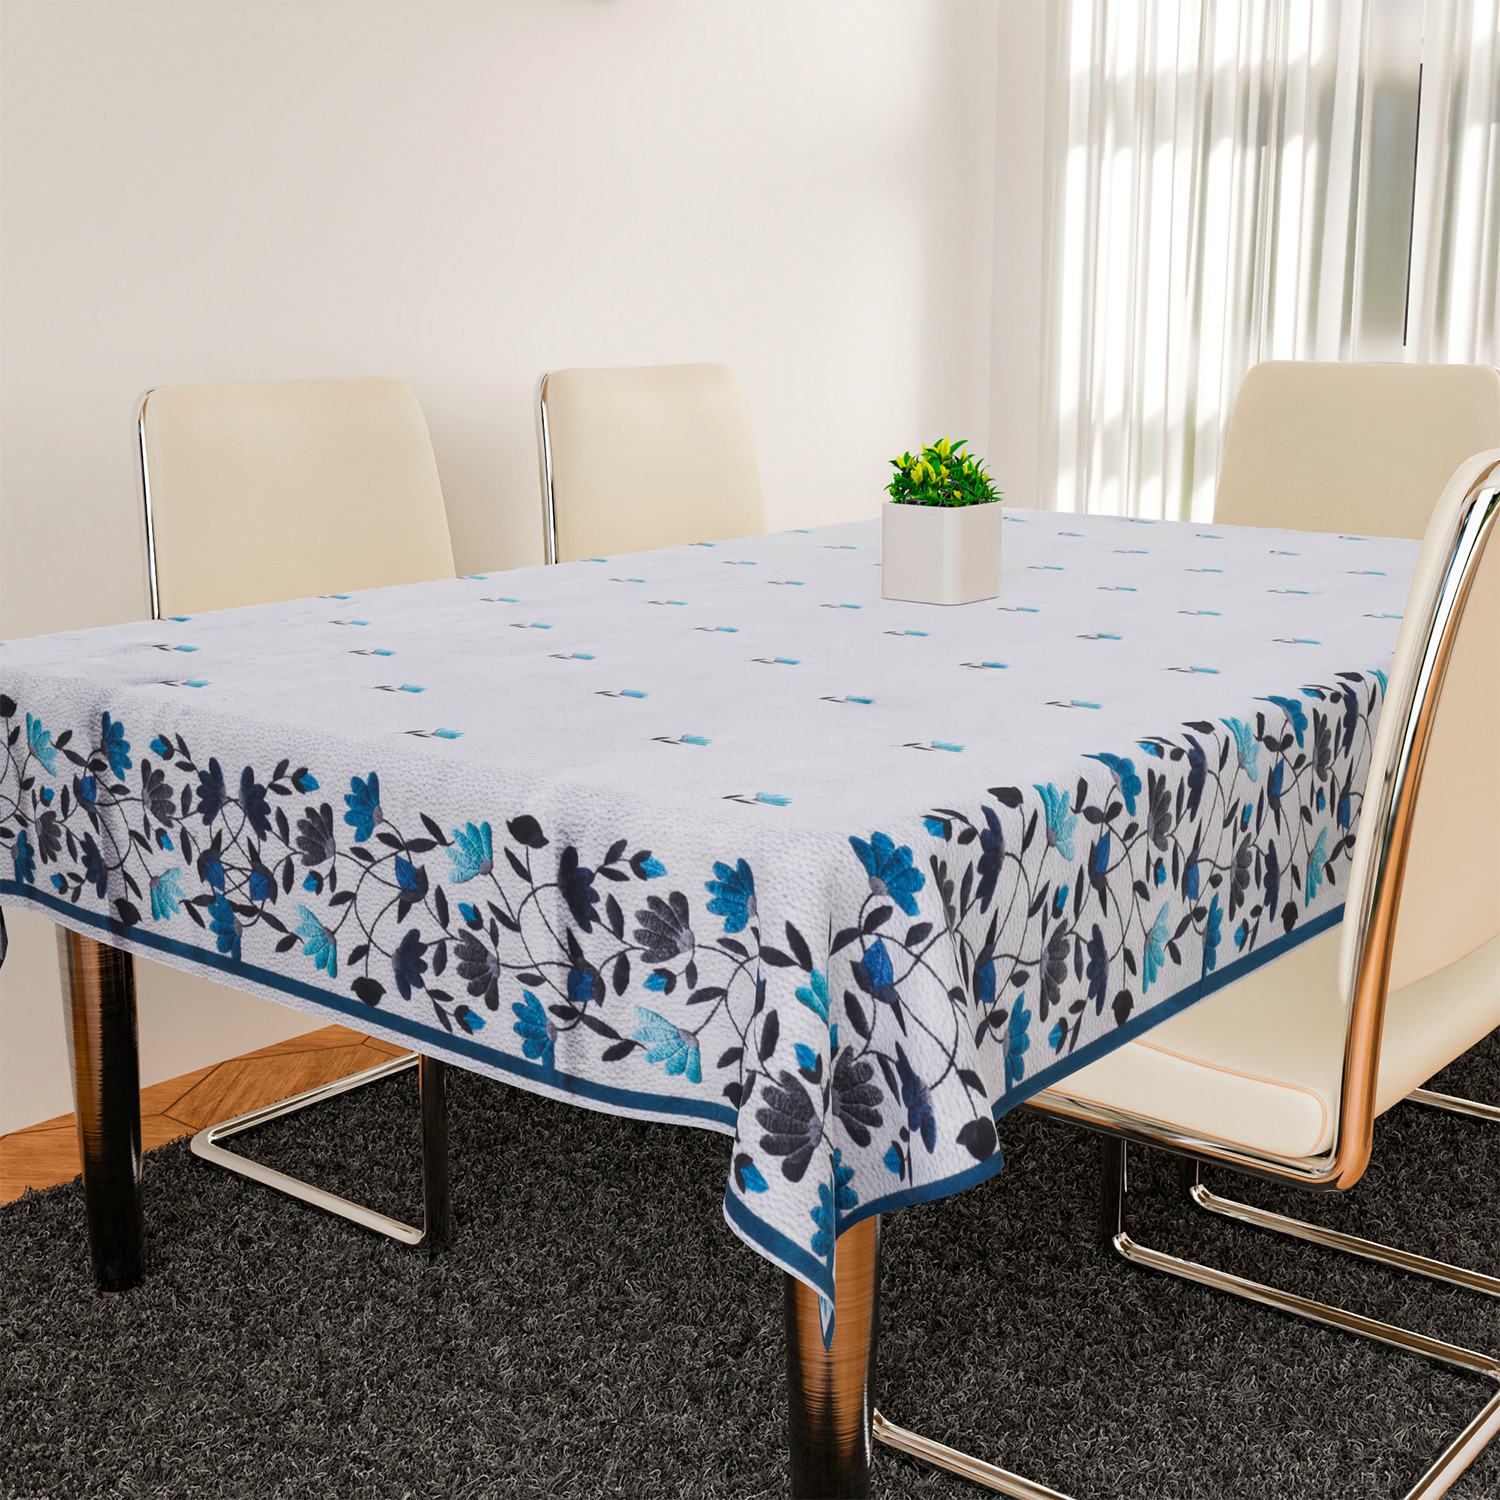 Kuber Industries Dining Table Cover | Velvet Sparkle Table Cover | Blue Digital Leaf Table Cover | Table Protector | Table Cover for Dining Table | 60X90 Inch | DTC | Gray